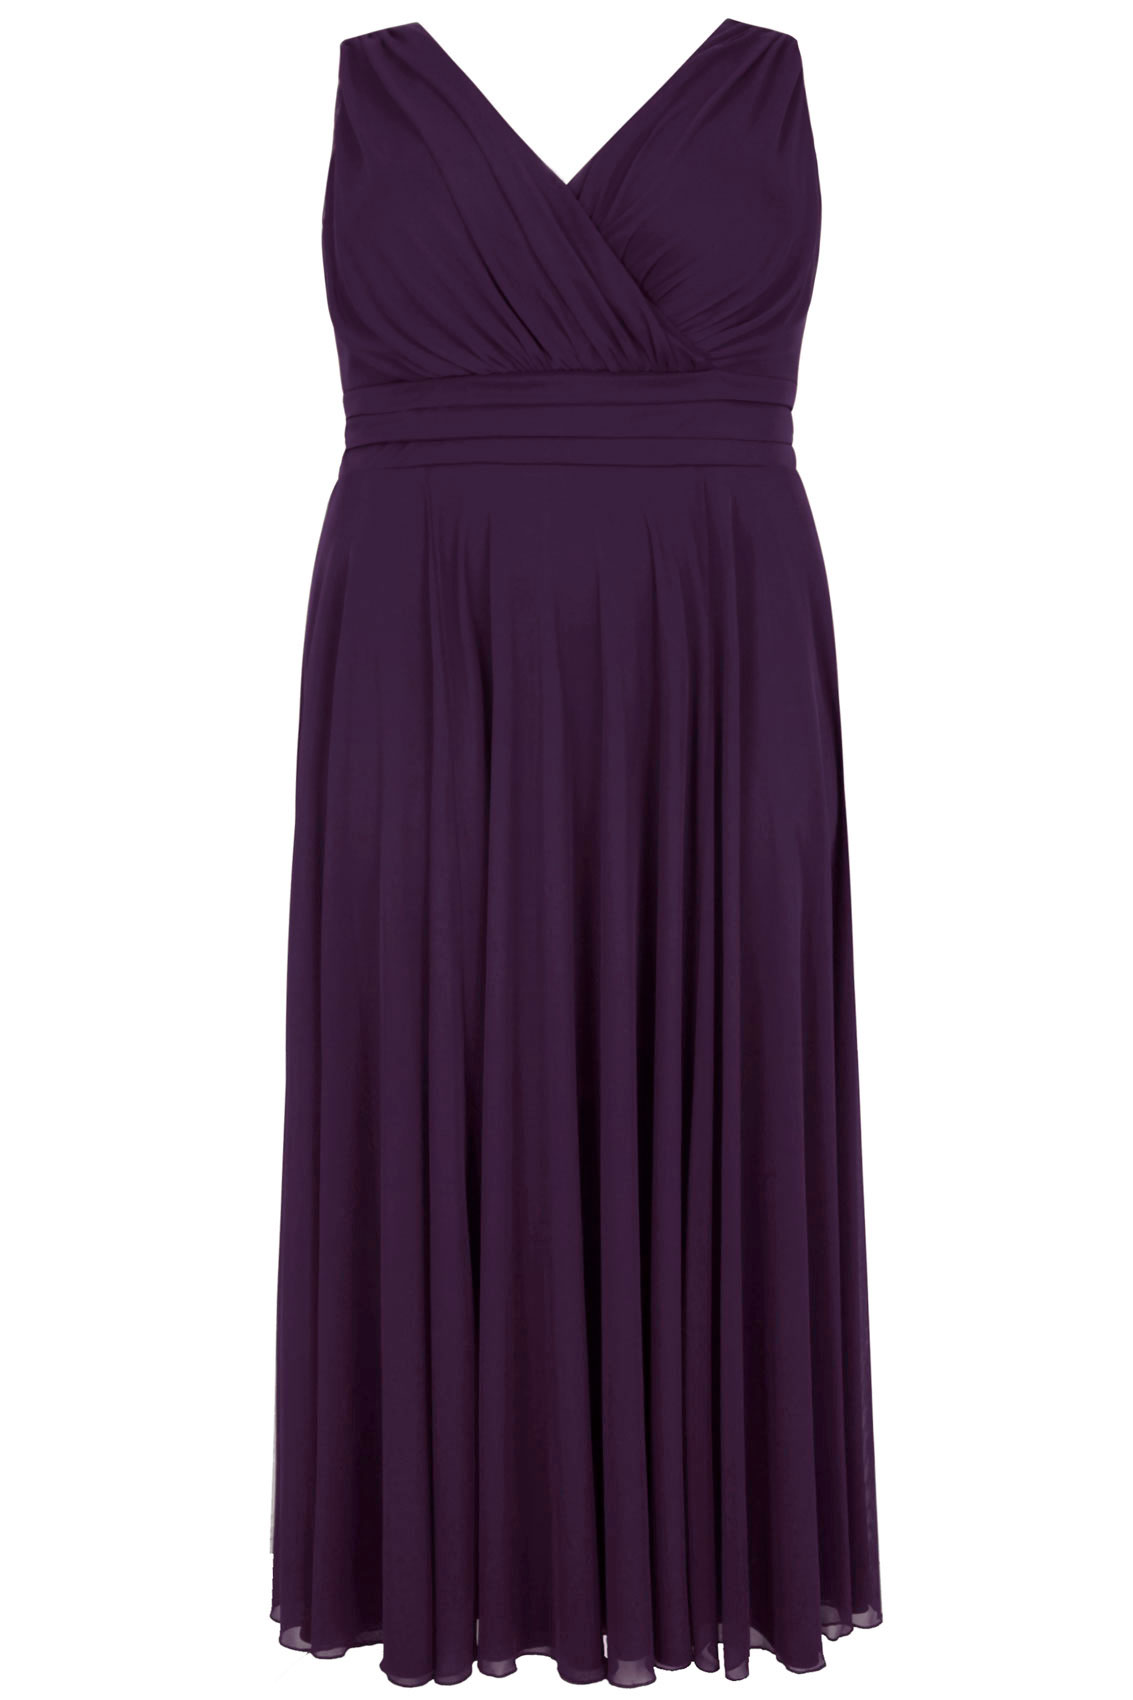 SCARLETT & JO Purple Marilyn Wrap Front Maxi Dress, Plus Size 16 to 32